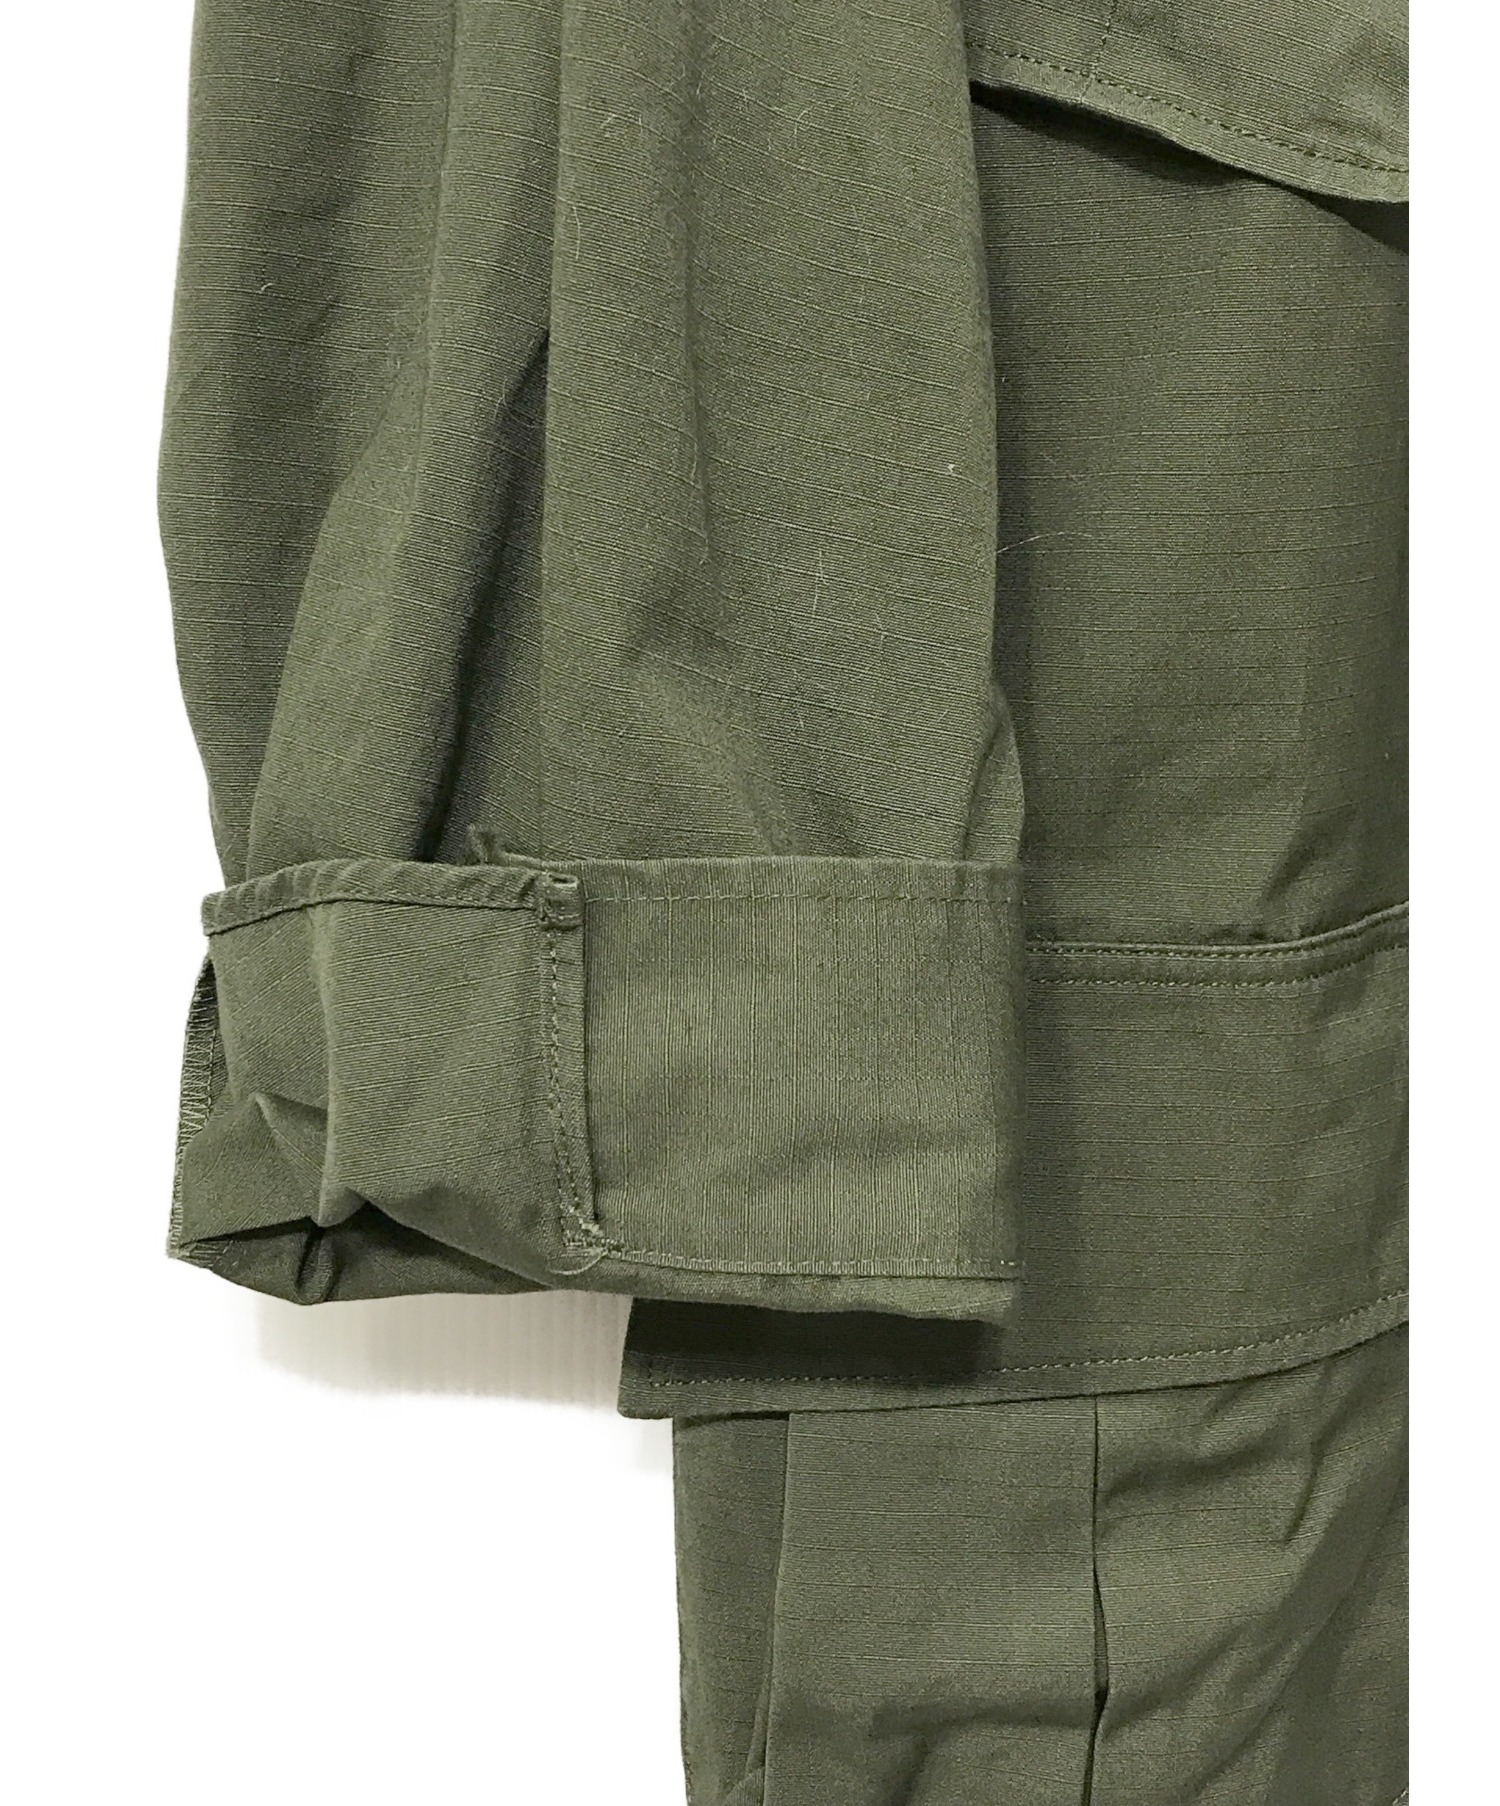 US ARMY (ユーエスアーミー) 69年製ファーティングジャケット カーキ サイズ:EXTRA SMALL-REGULAR  8405-935-4703